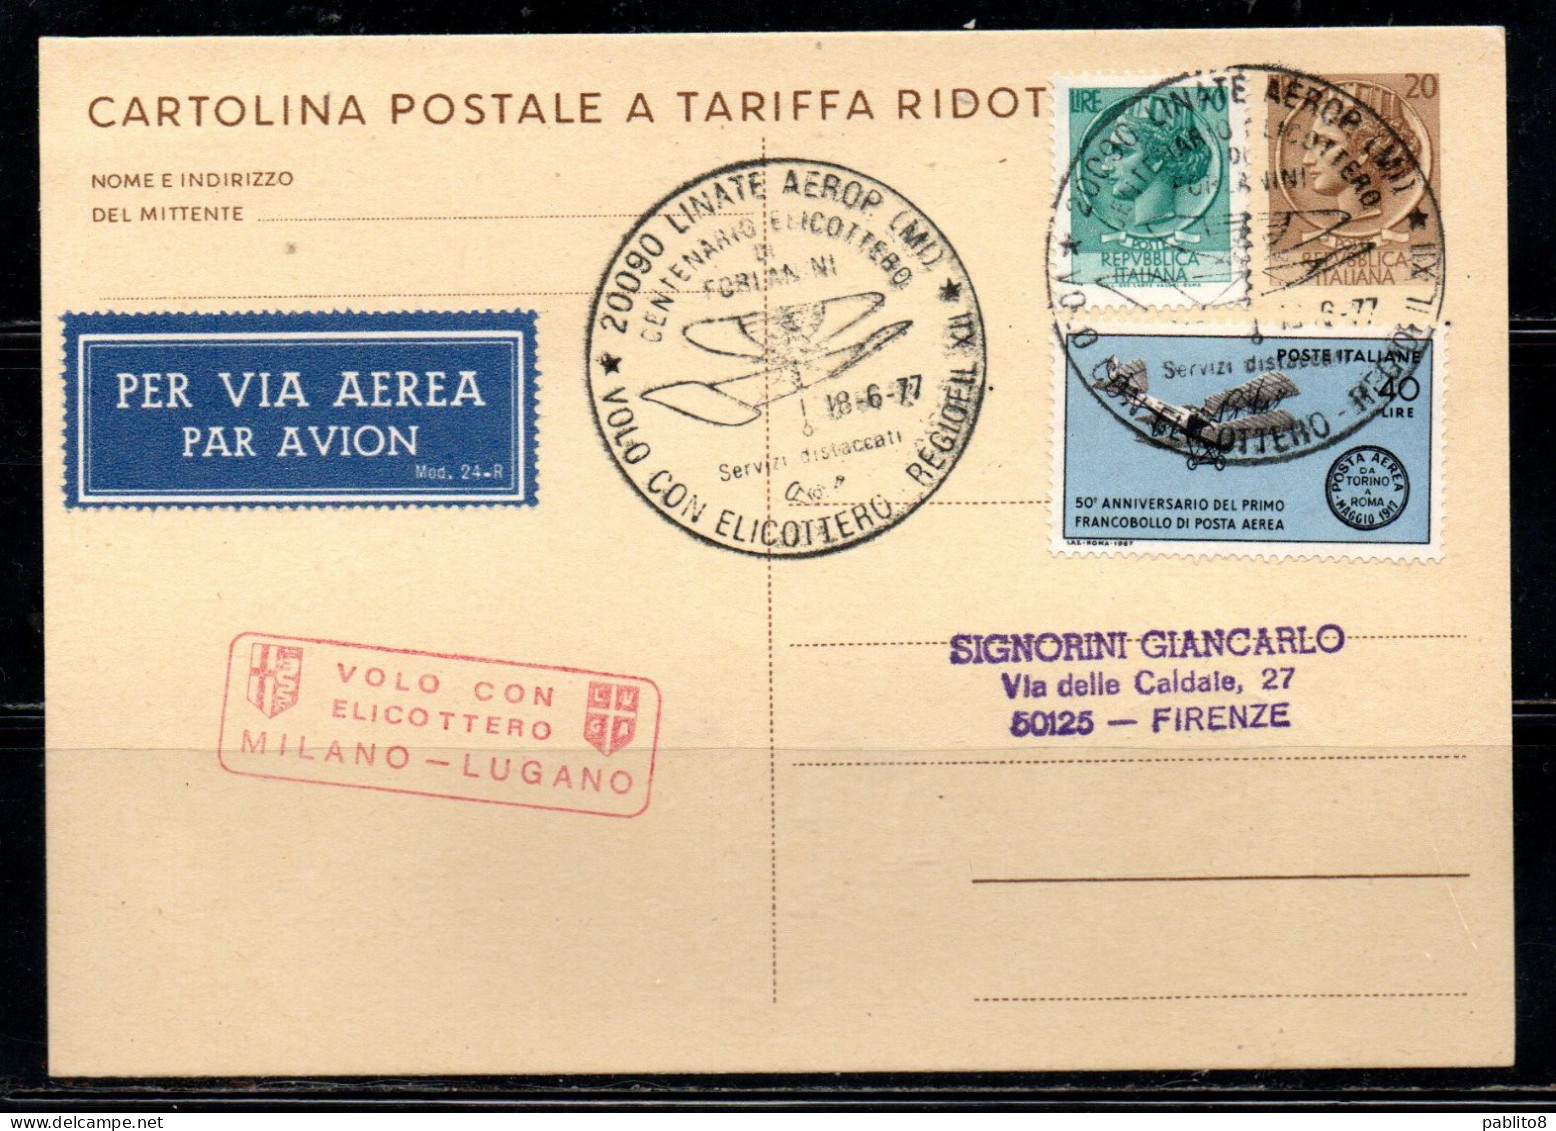 ITALIA REPUBBLICA ITALY REPUBLIC CARTOLINA POSTALE 18-6-1977 VOLO CON ELICOTTERO MILANO - LUGANO FORLANINI VIAGGIATA - Ganzsachen